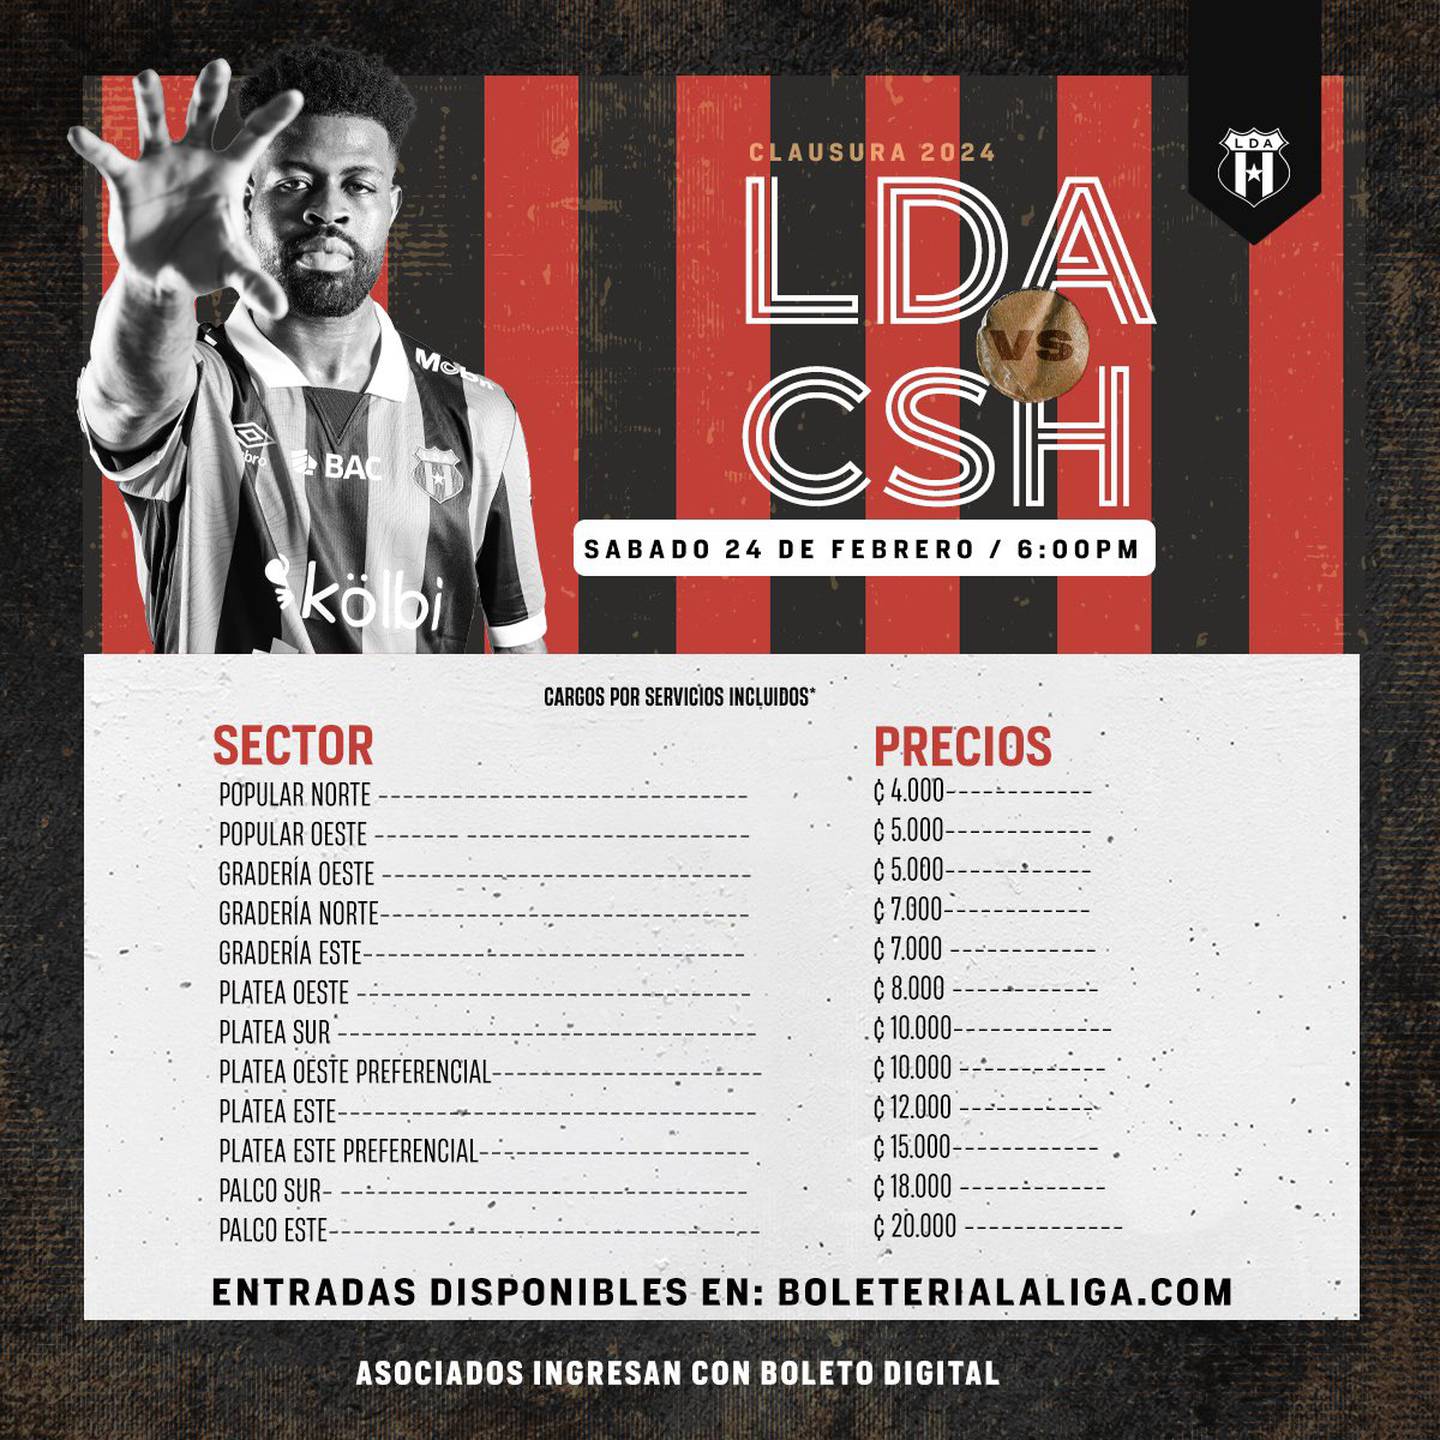 Estos son los precios para el partido entre Liga Deportiva Alajuelense y Herediano, pactado para el sábado 24 de febrero en el Estadio Alejandro Morera Soto.